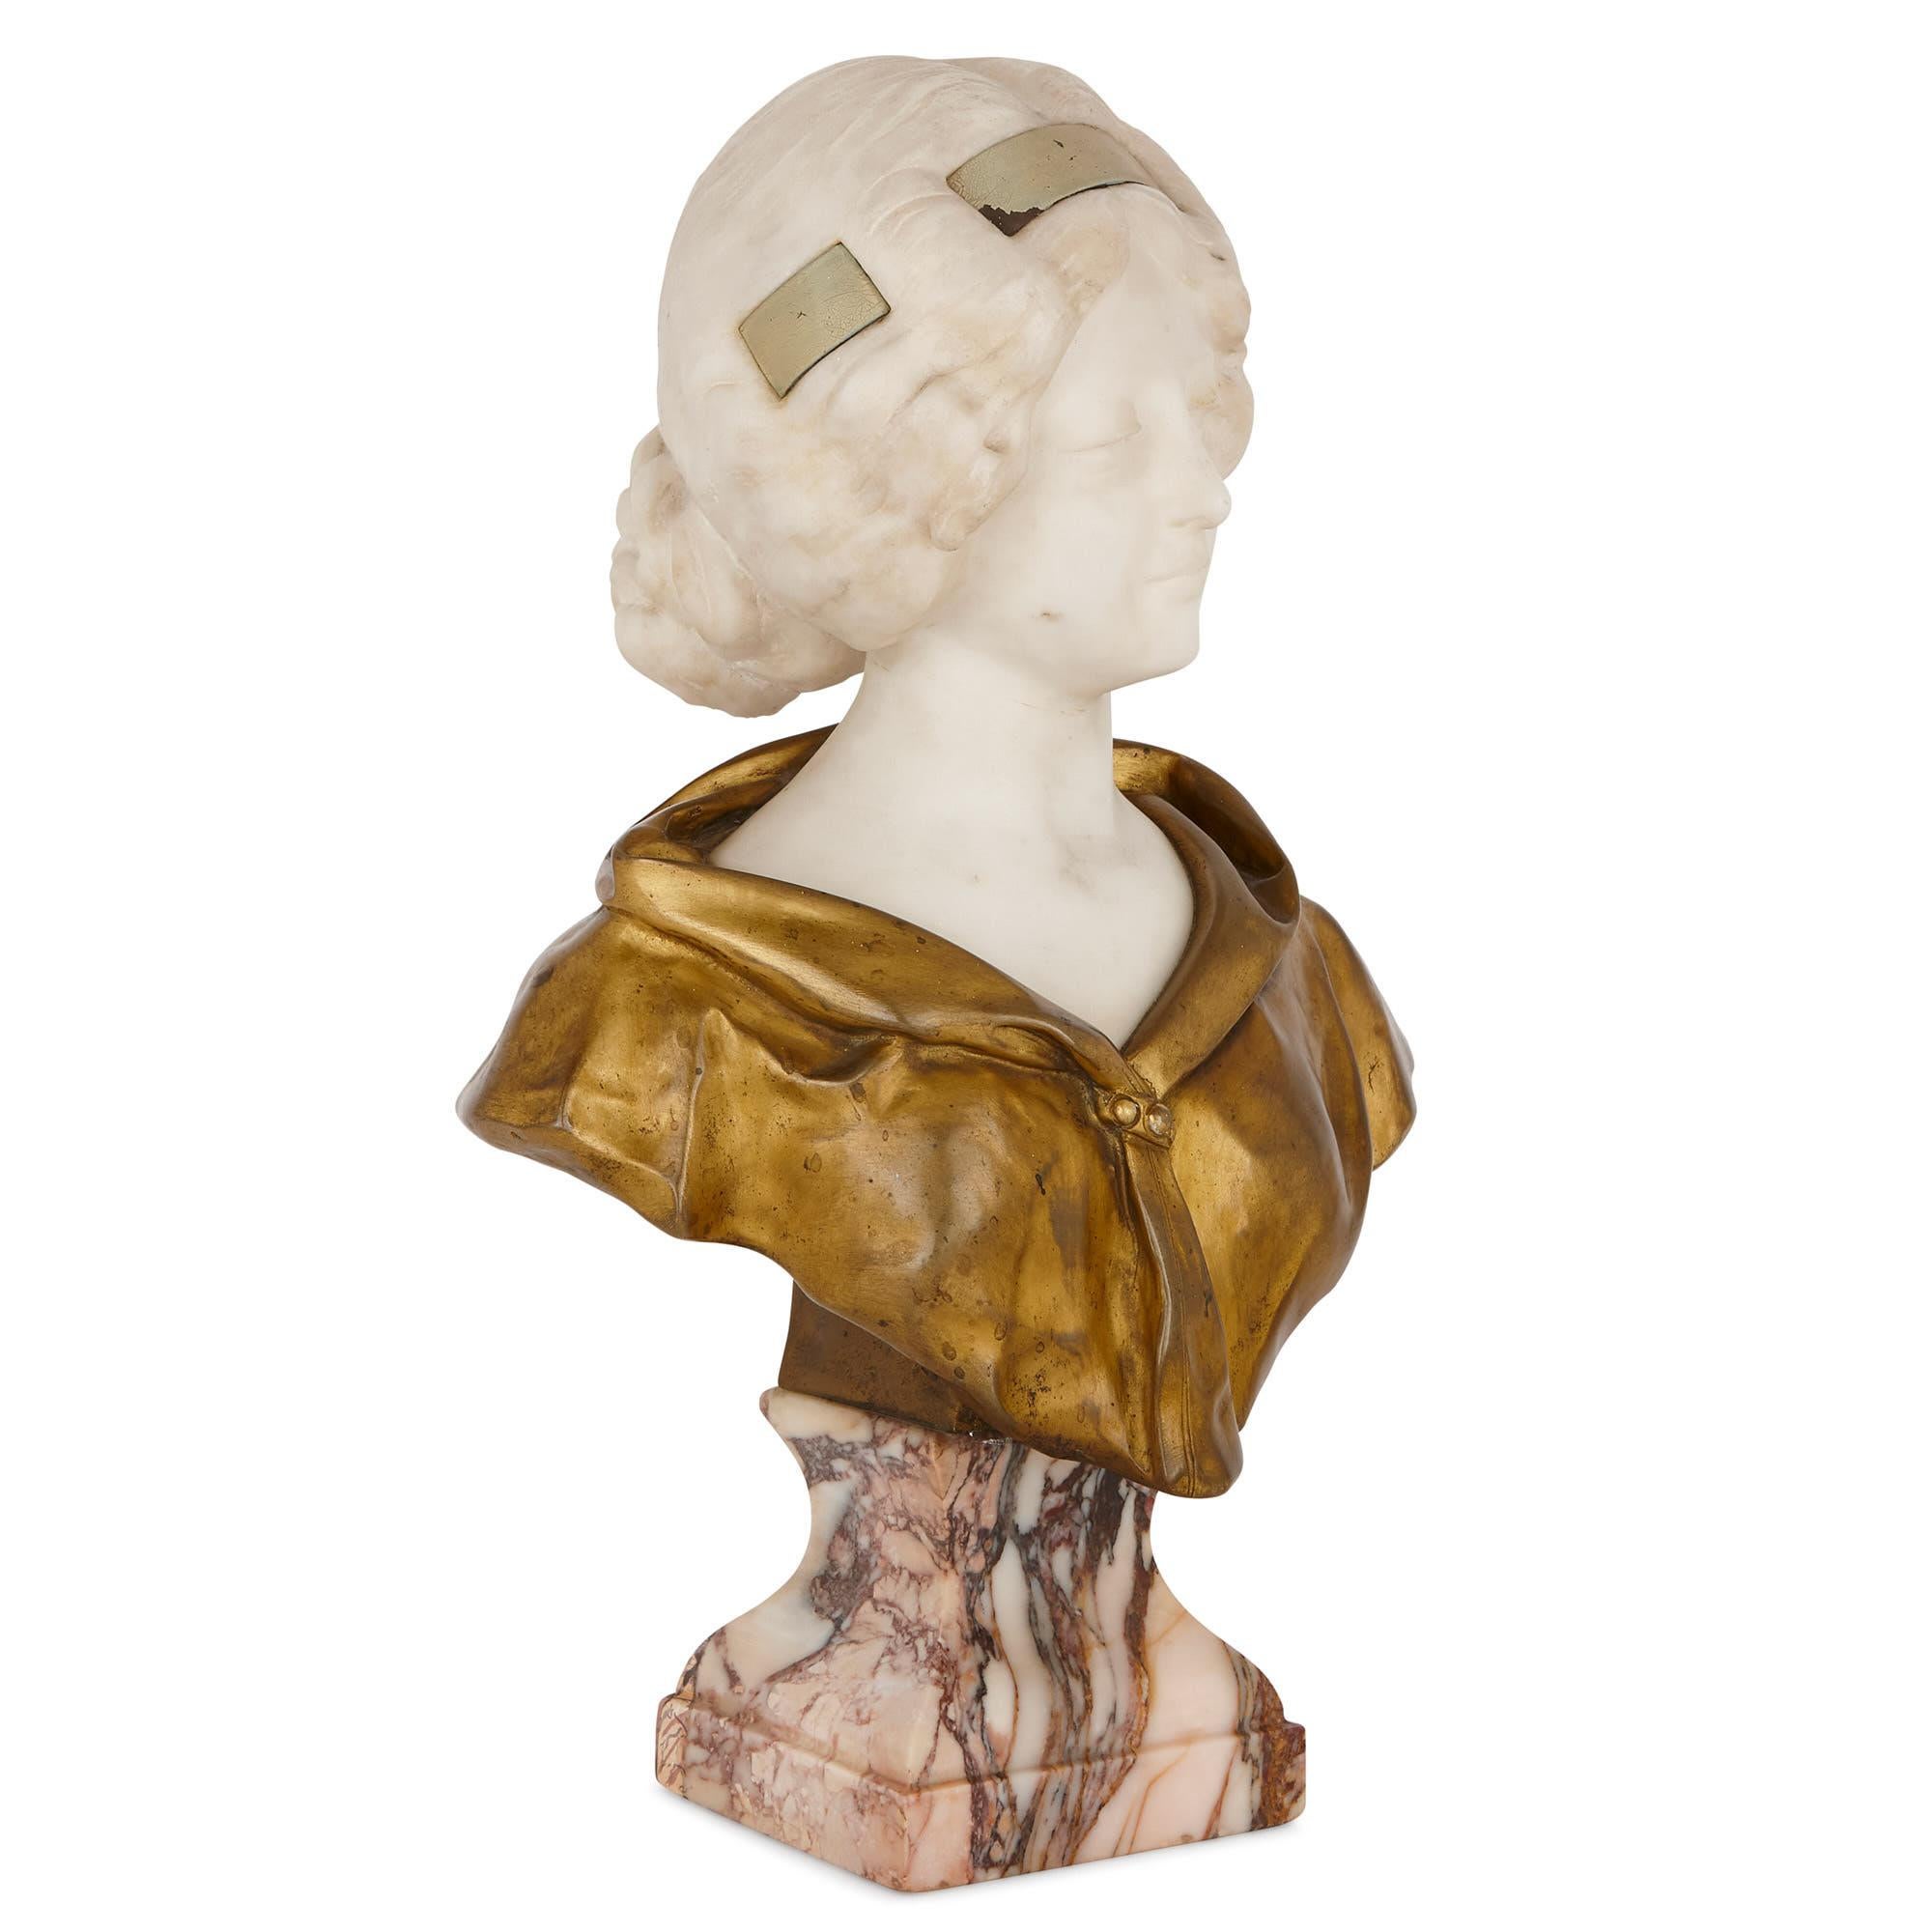 Cette charmante sculpture d'une jeune femme est l'œuvre du sculpteur italien accompli Affortunato Gori (1895-1925). Gori est surtout connu pour ses sculptures de femmes et d'enfants, souvent réalisées dans une combinaison de marbre, de bronze doré